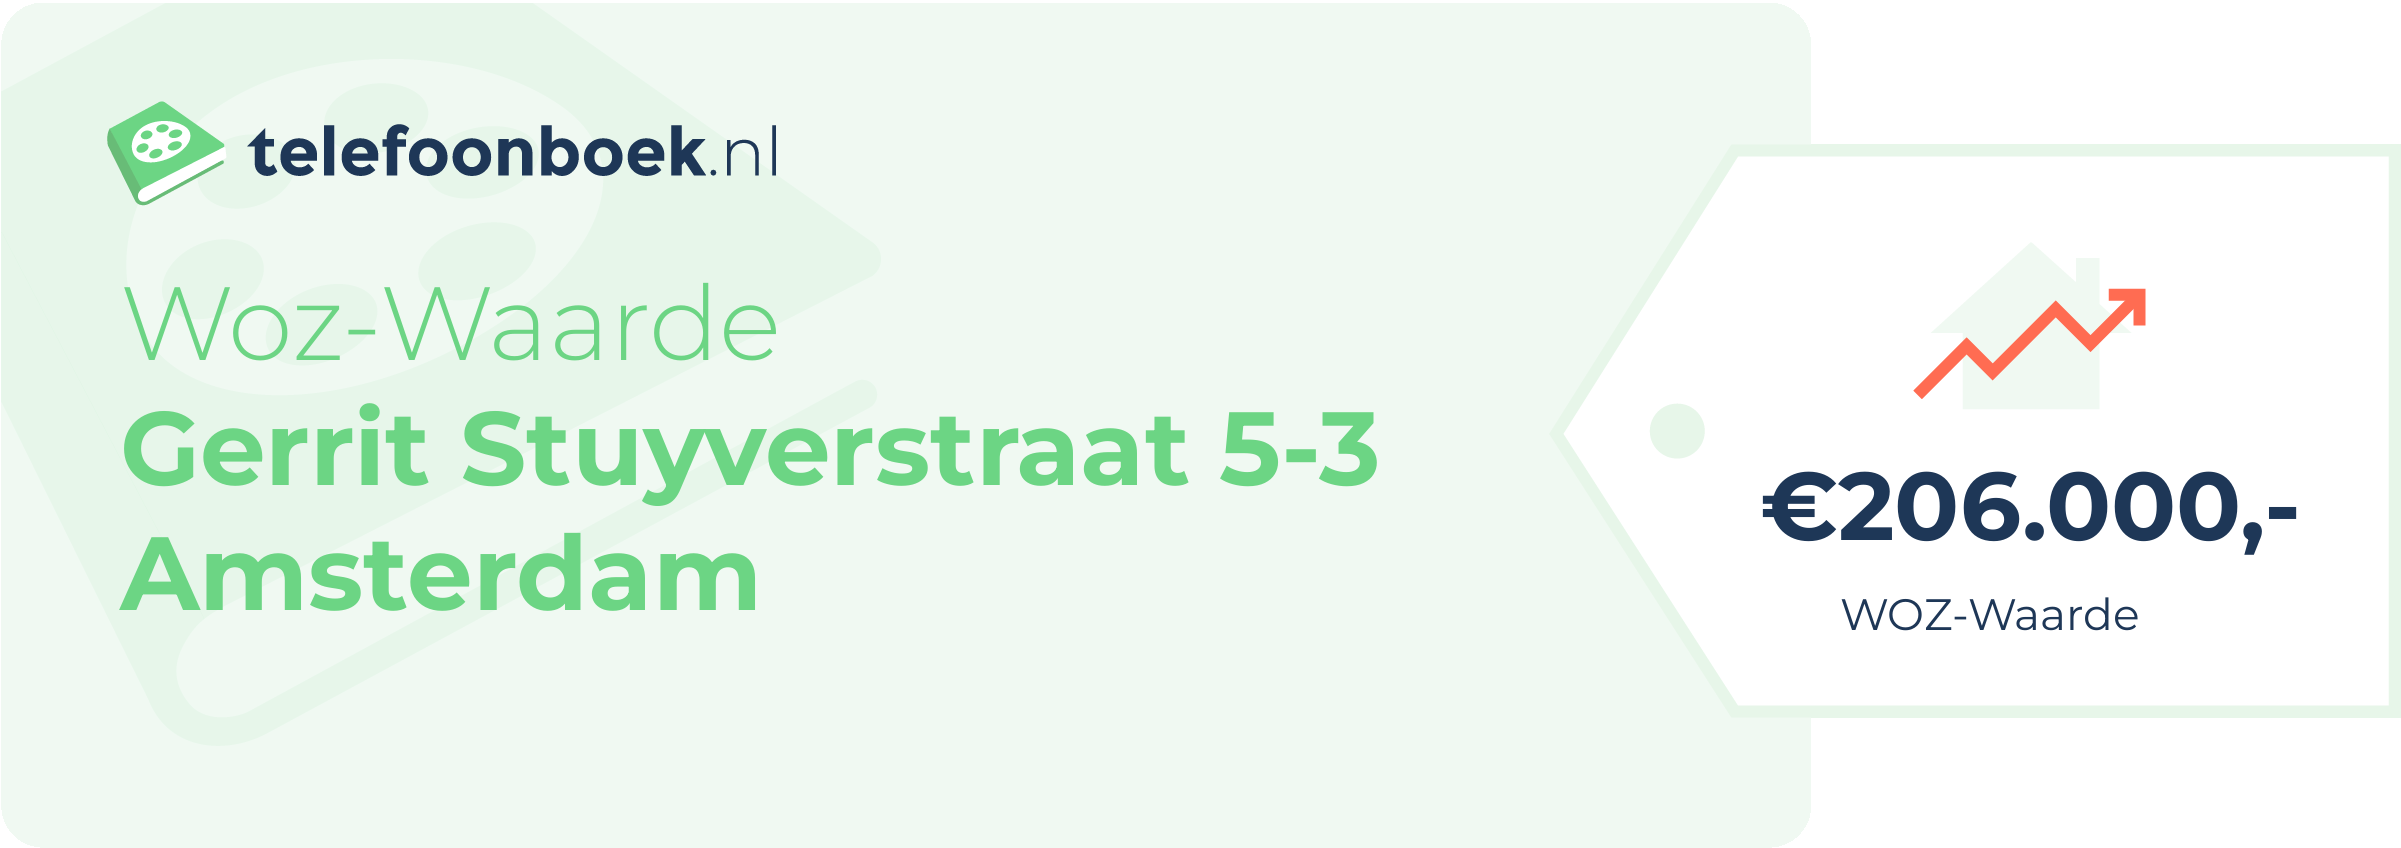 WOZ-waarde Gerrit Stuyverstraat 5-3 Amsterdam